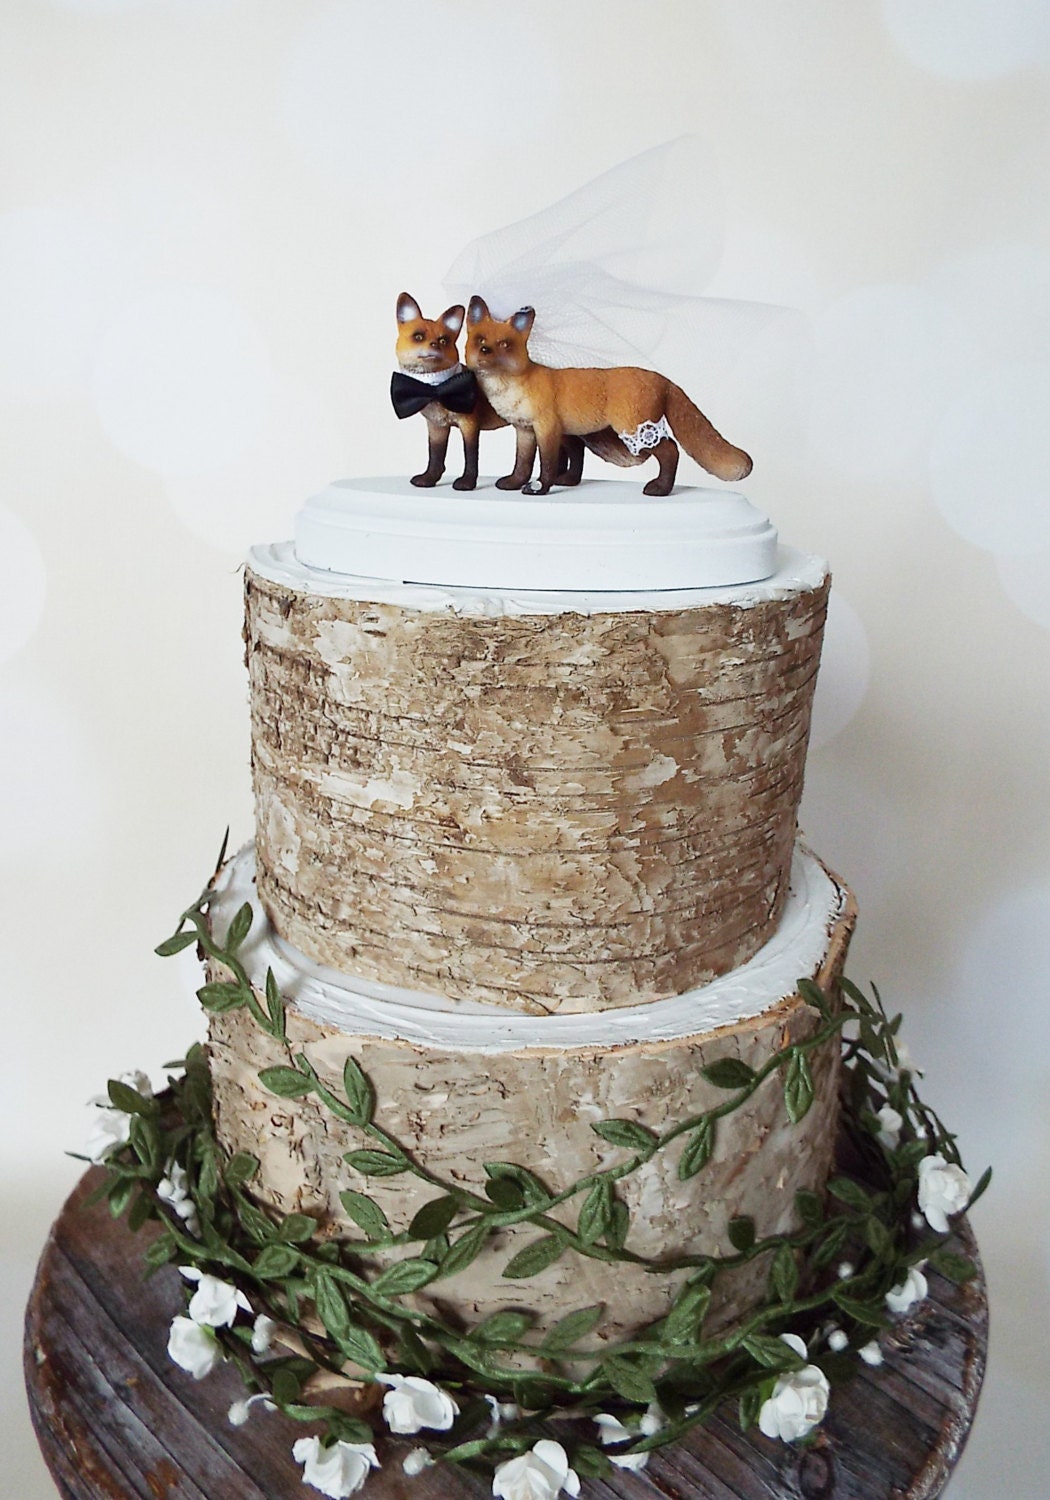 Woodland themed wedding cakes